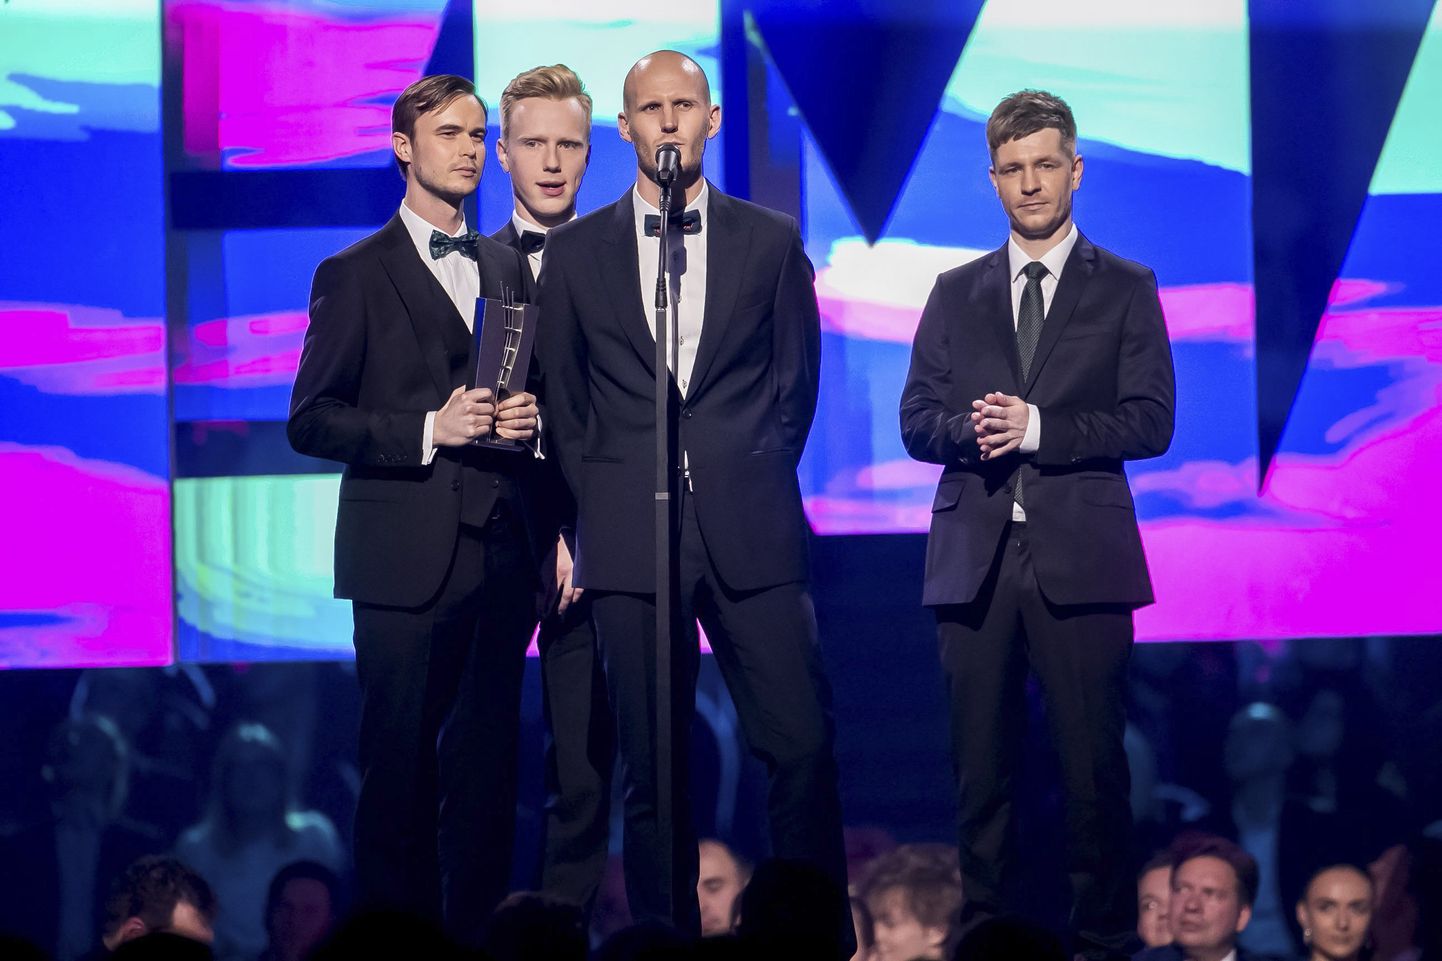 Eesti muusikaauhindade jagamisel saatis ansamblit Miljardid suur edu: pälviti aasta debüütalbumi, aasta rokialbumi ja aasta albumi auhind.